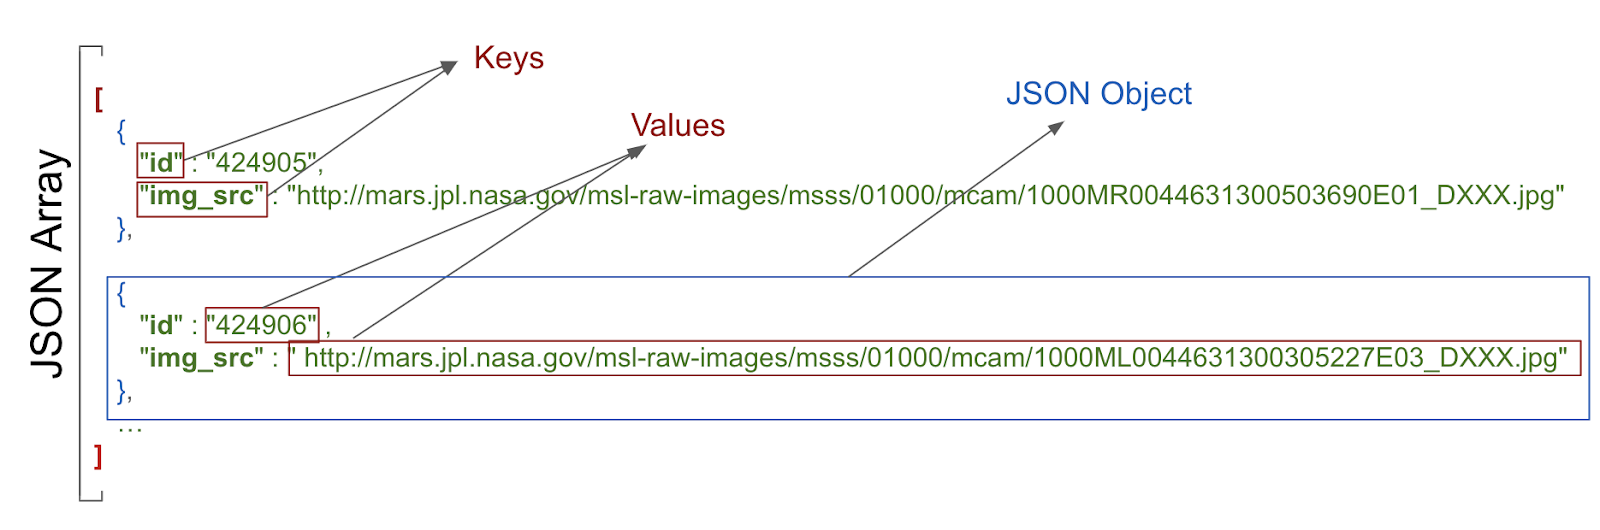 Estrutura mostrando chaves, valores e o objeto JSON